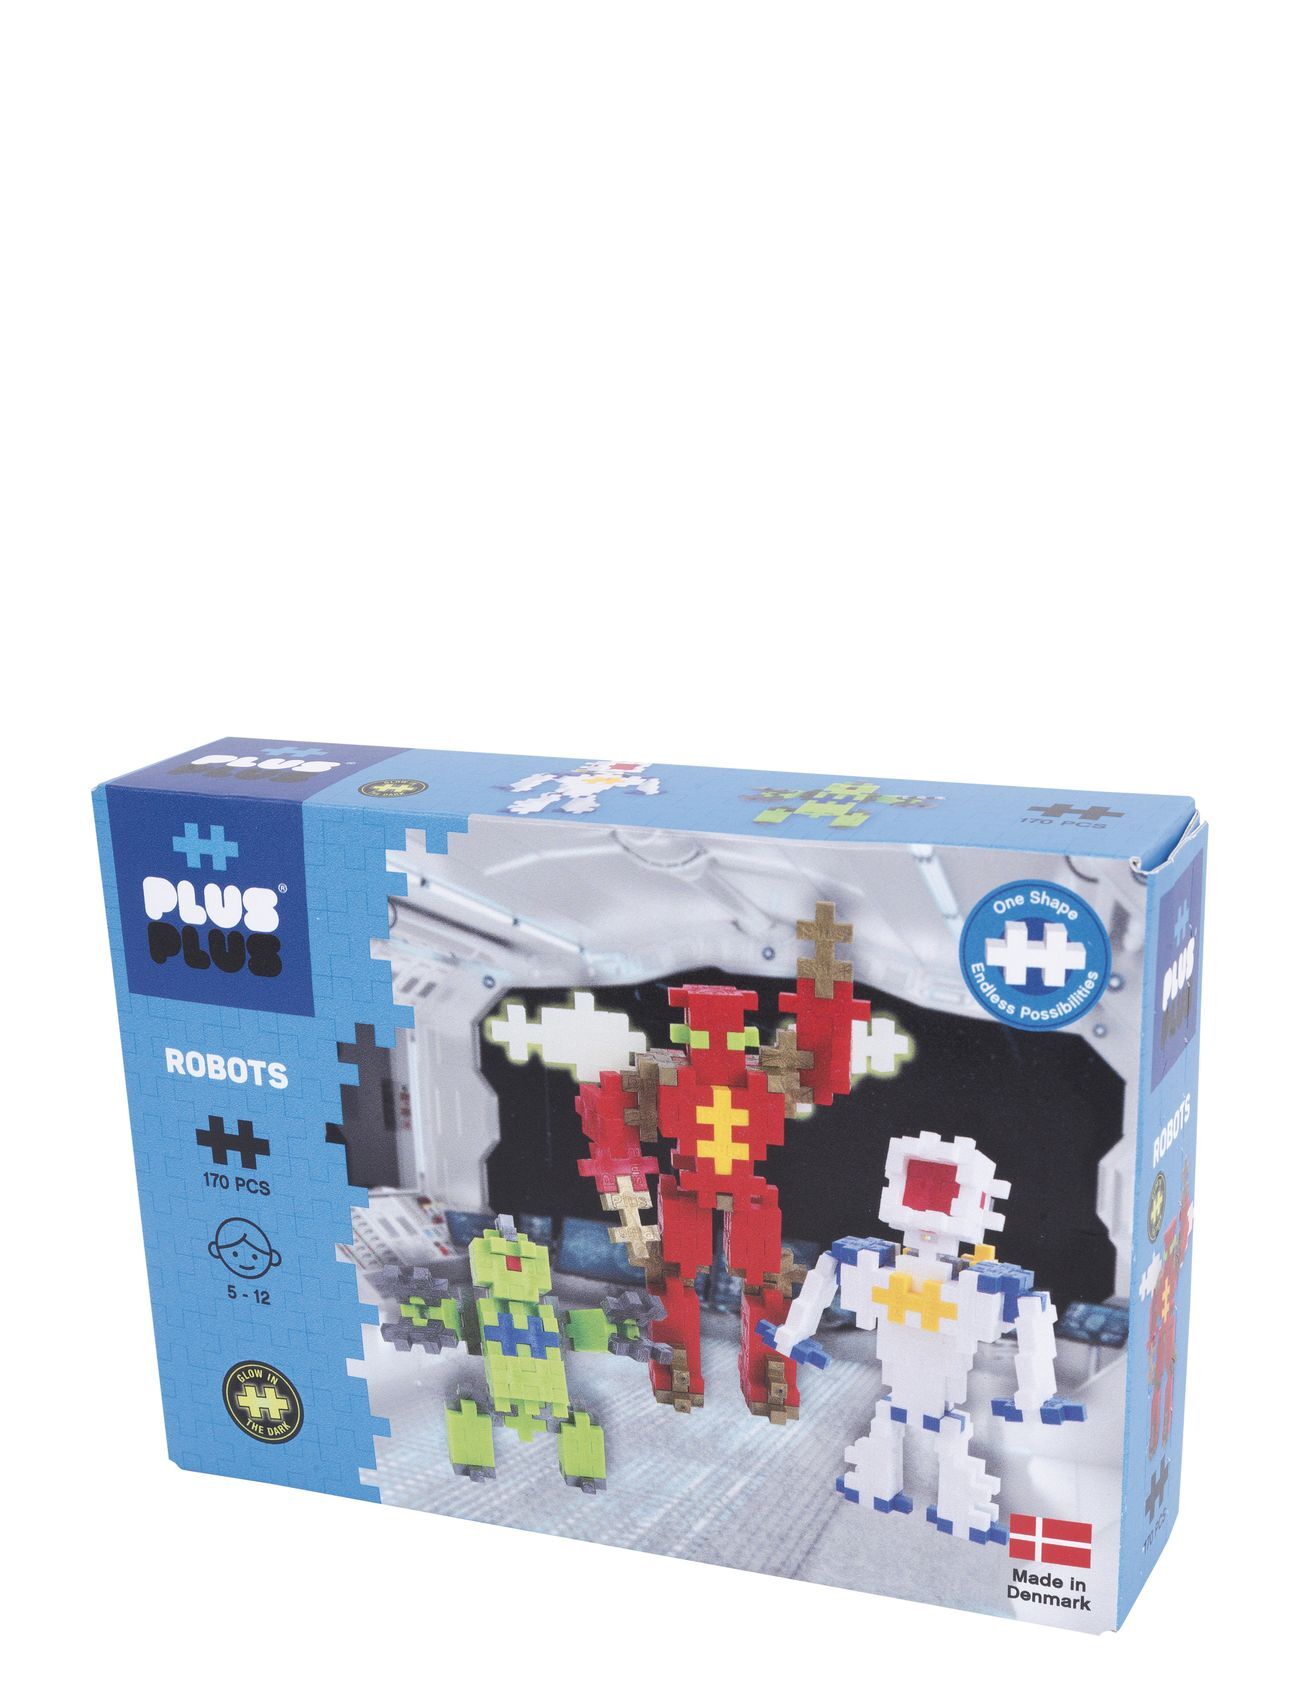 Plus-Plus Robots / 170Pcs Toys Building Sets & Blocks Building Sets Multi/mønstret Plus-Plus